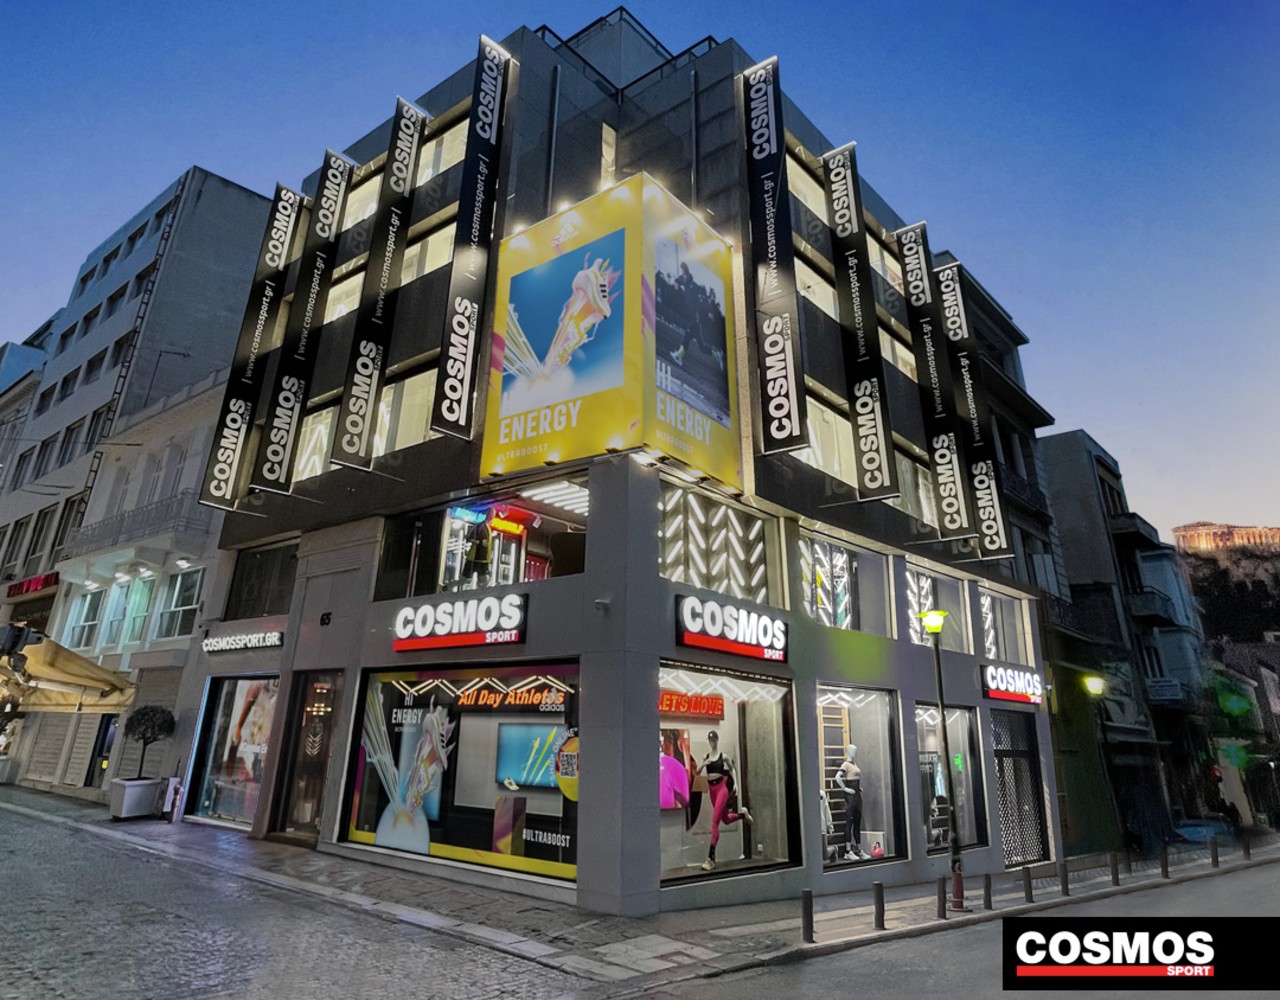 Άνοιξε το Flagship κατάστημα των Cosmos Sport στην Ερμού αφιερωμένο στον “All Day Athlete”